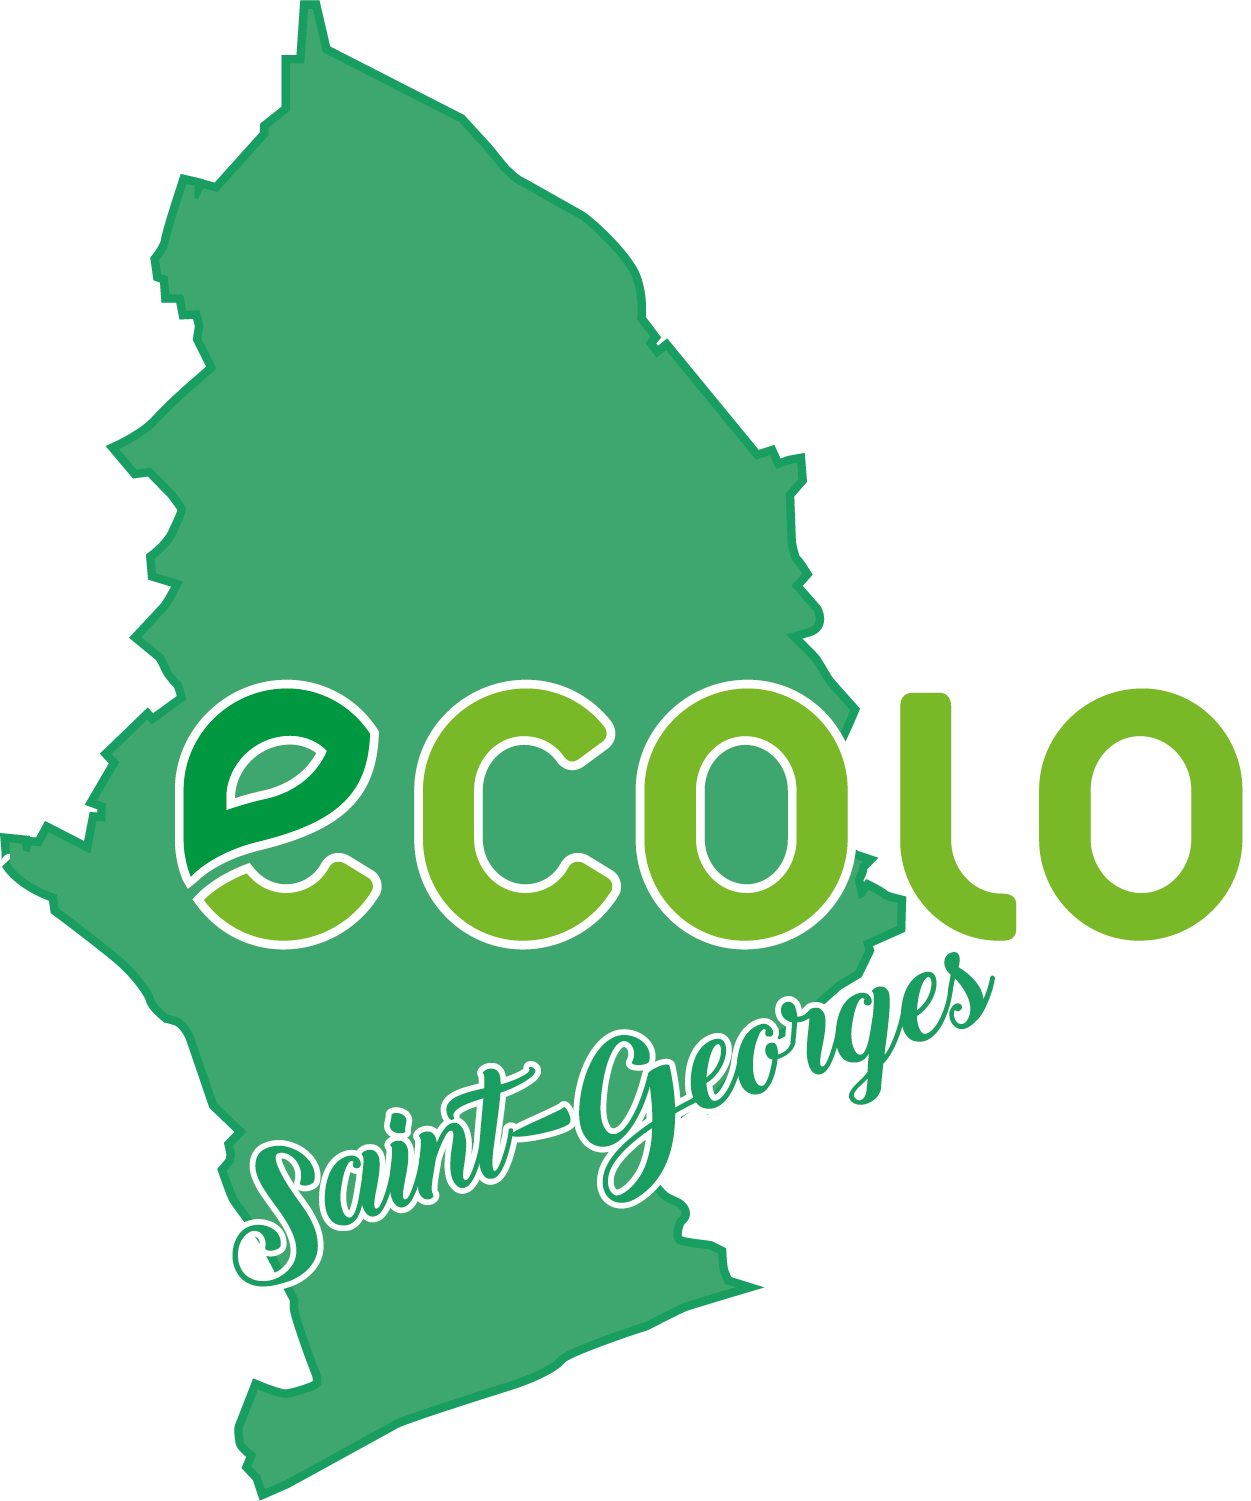 Ecolo Saint-Georges